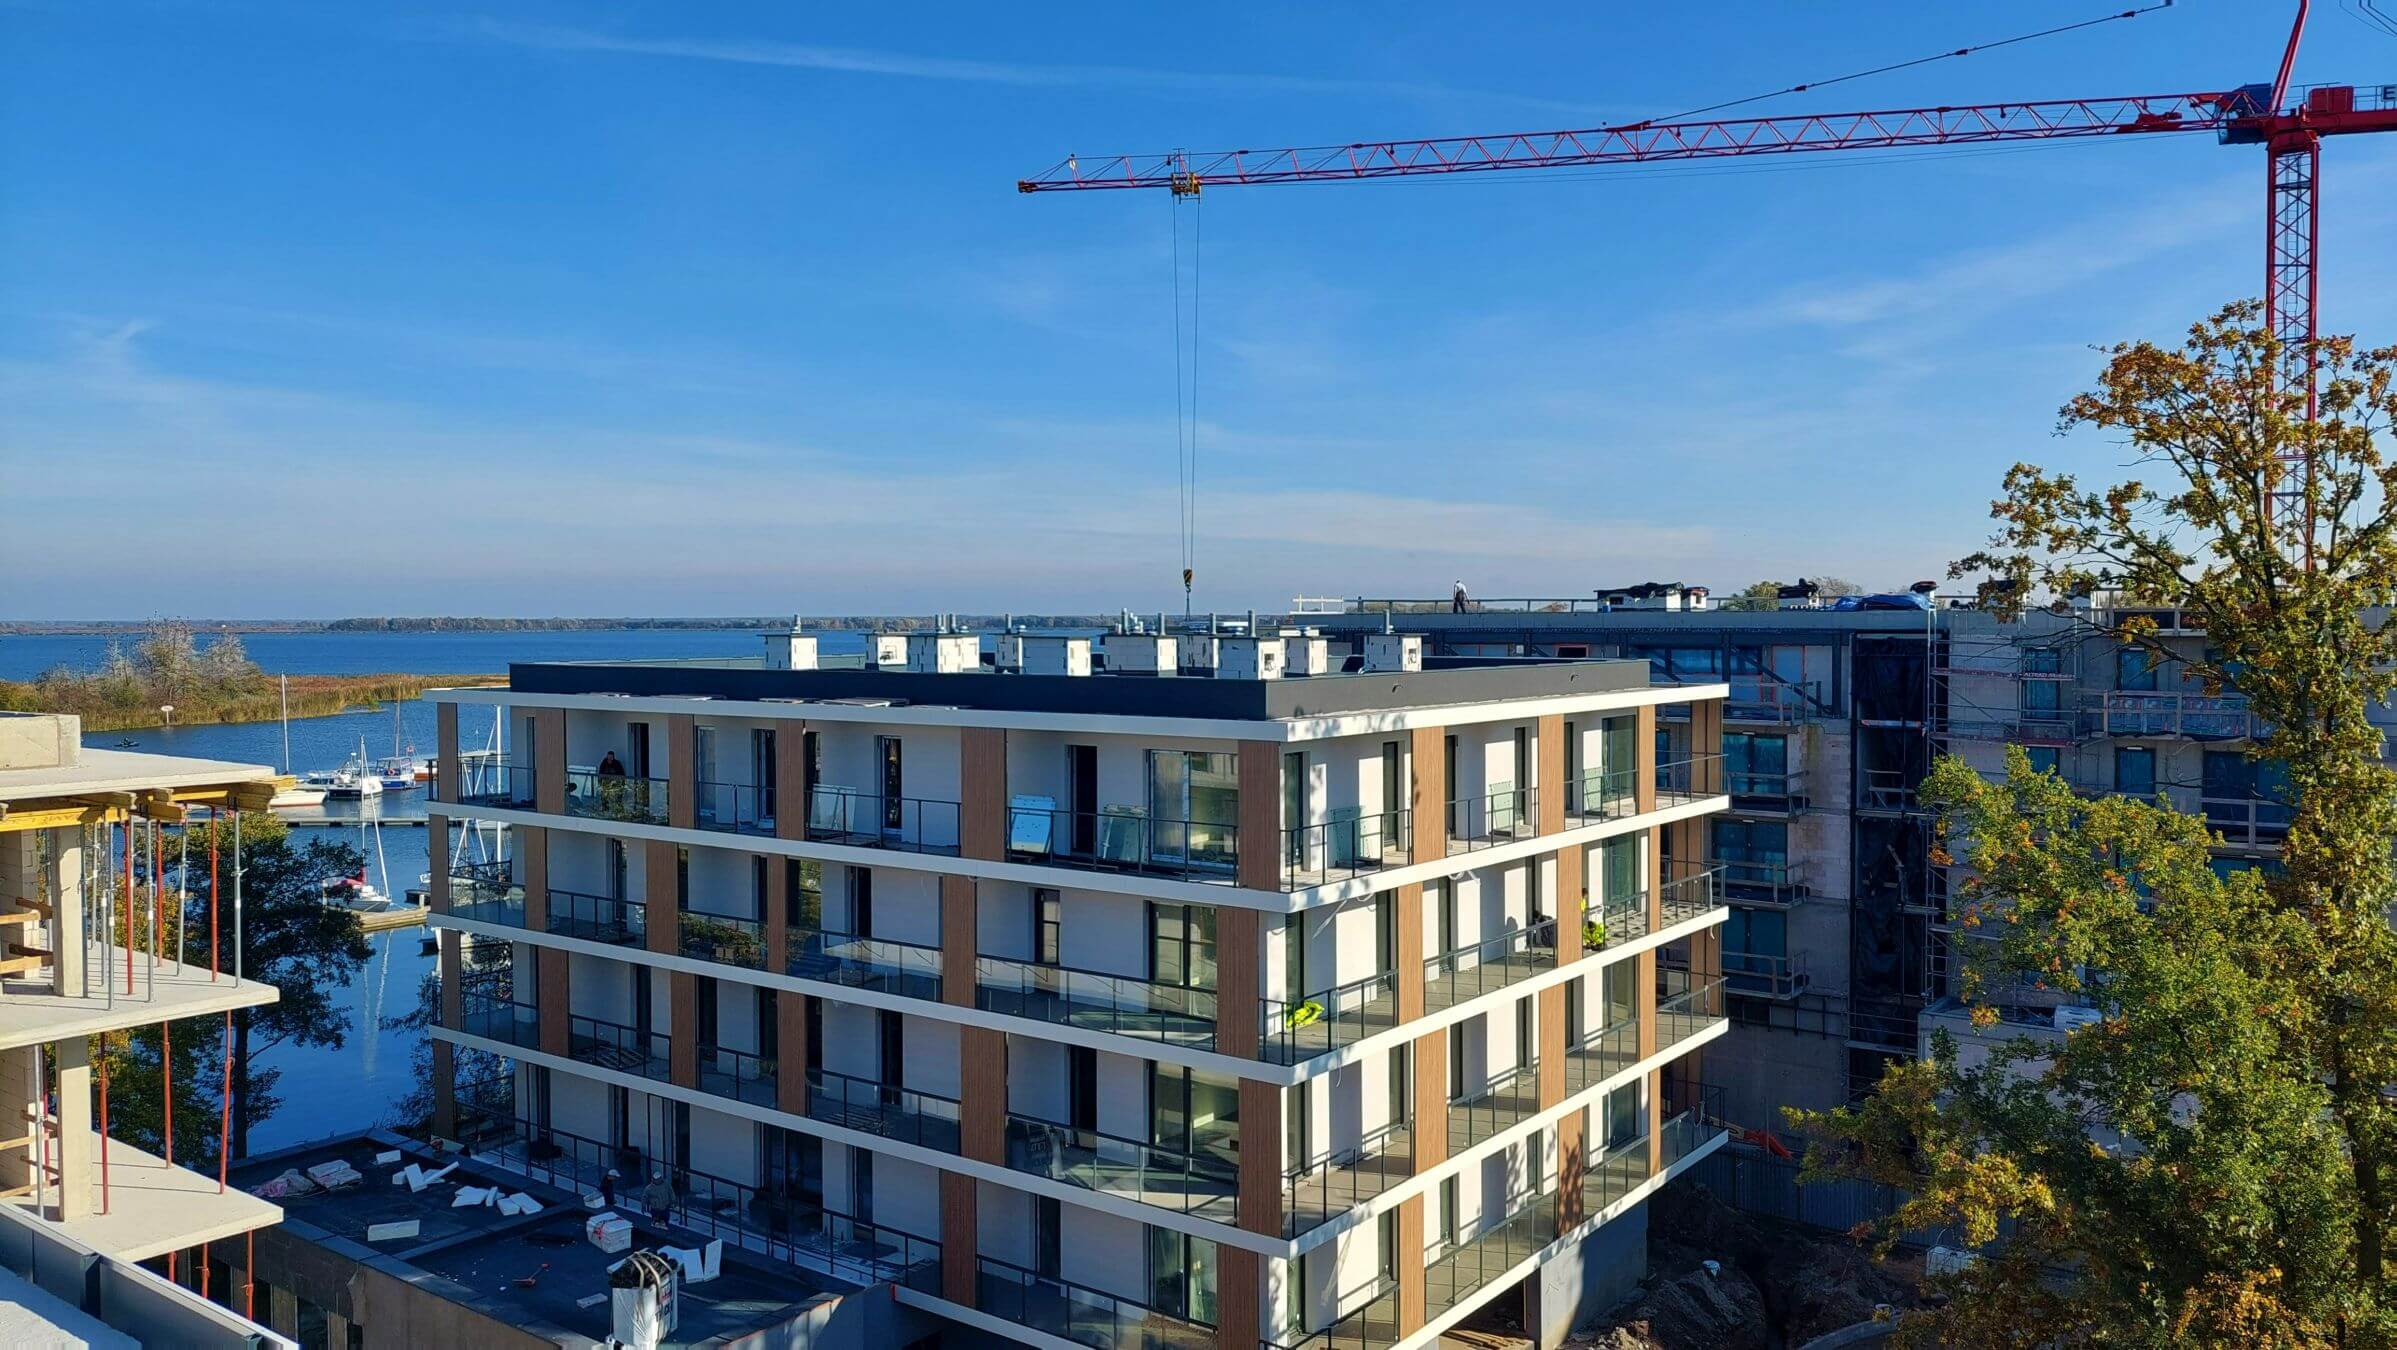 Victoria, Dziennik budowy - Victoria Apartments w Szczecinie - listopad 2021